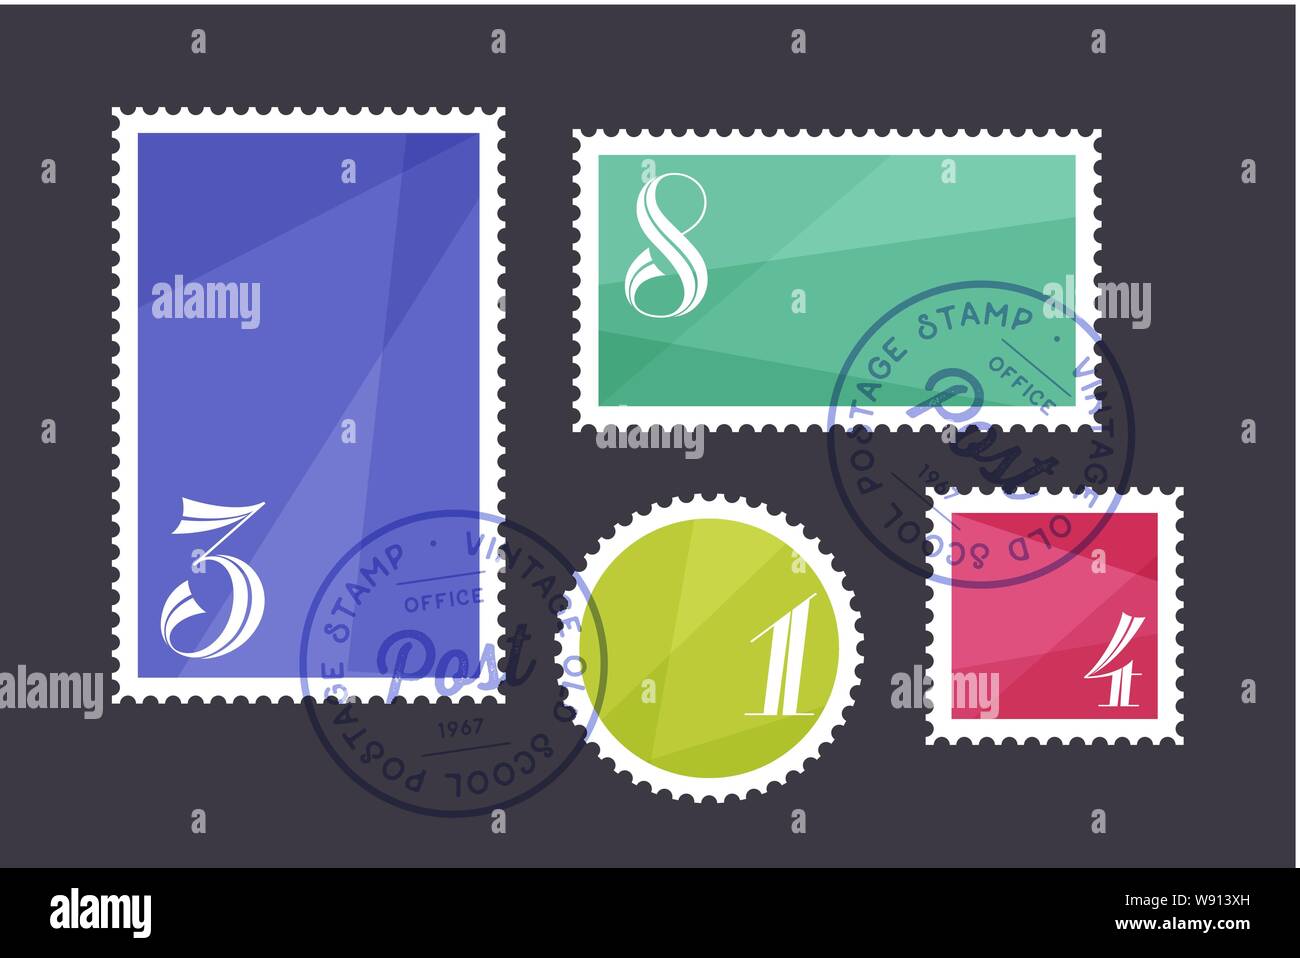 Briefmarke. Einstellen der Briefmarke, Quadrat, Kreis Stock Vektor